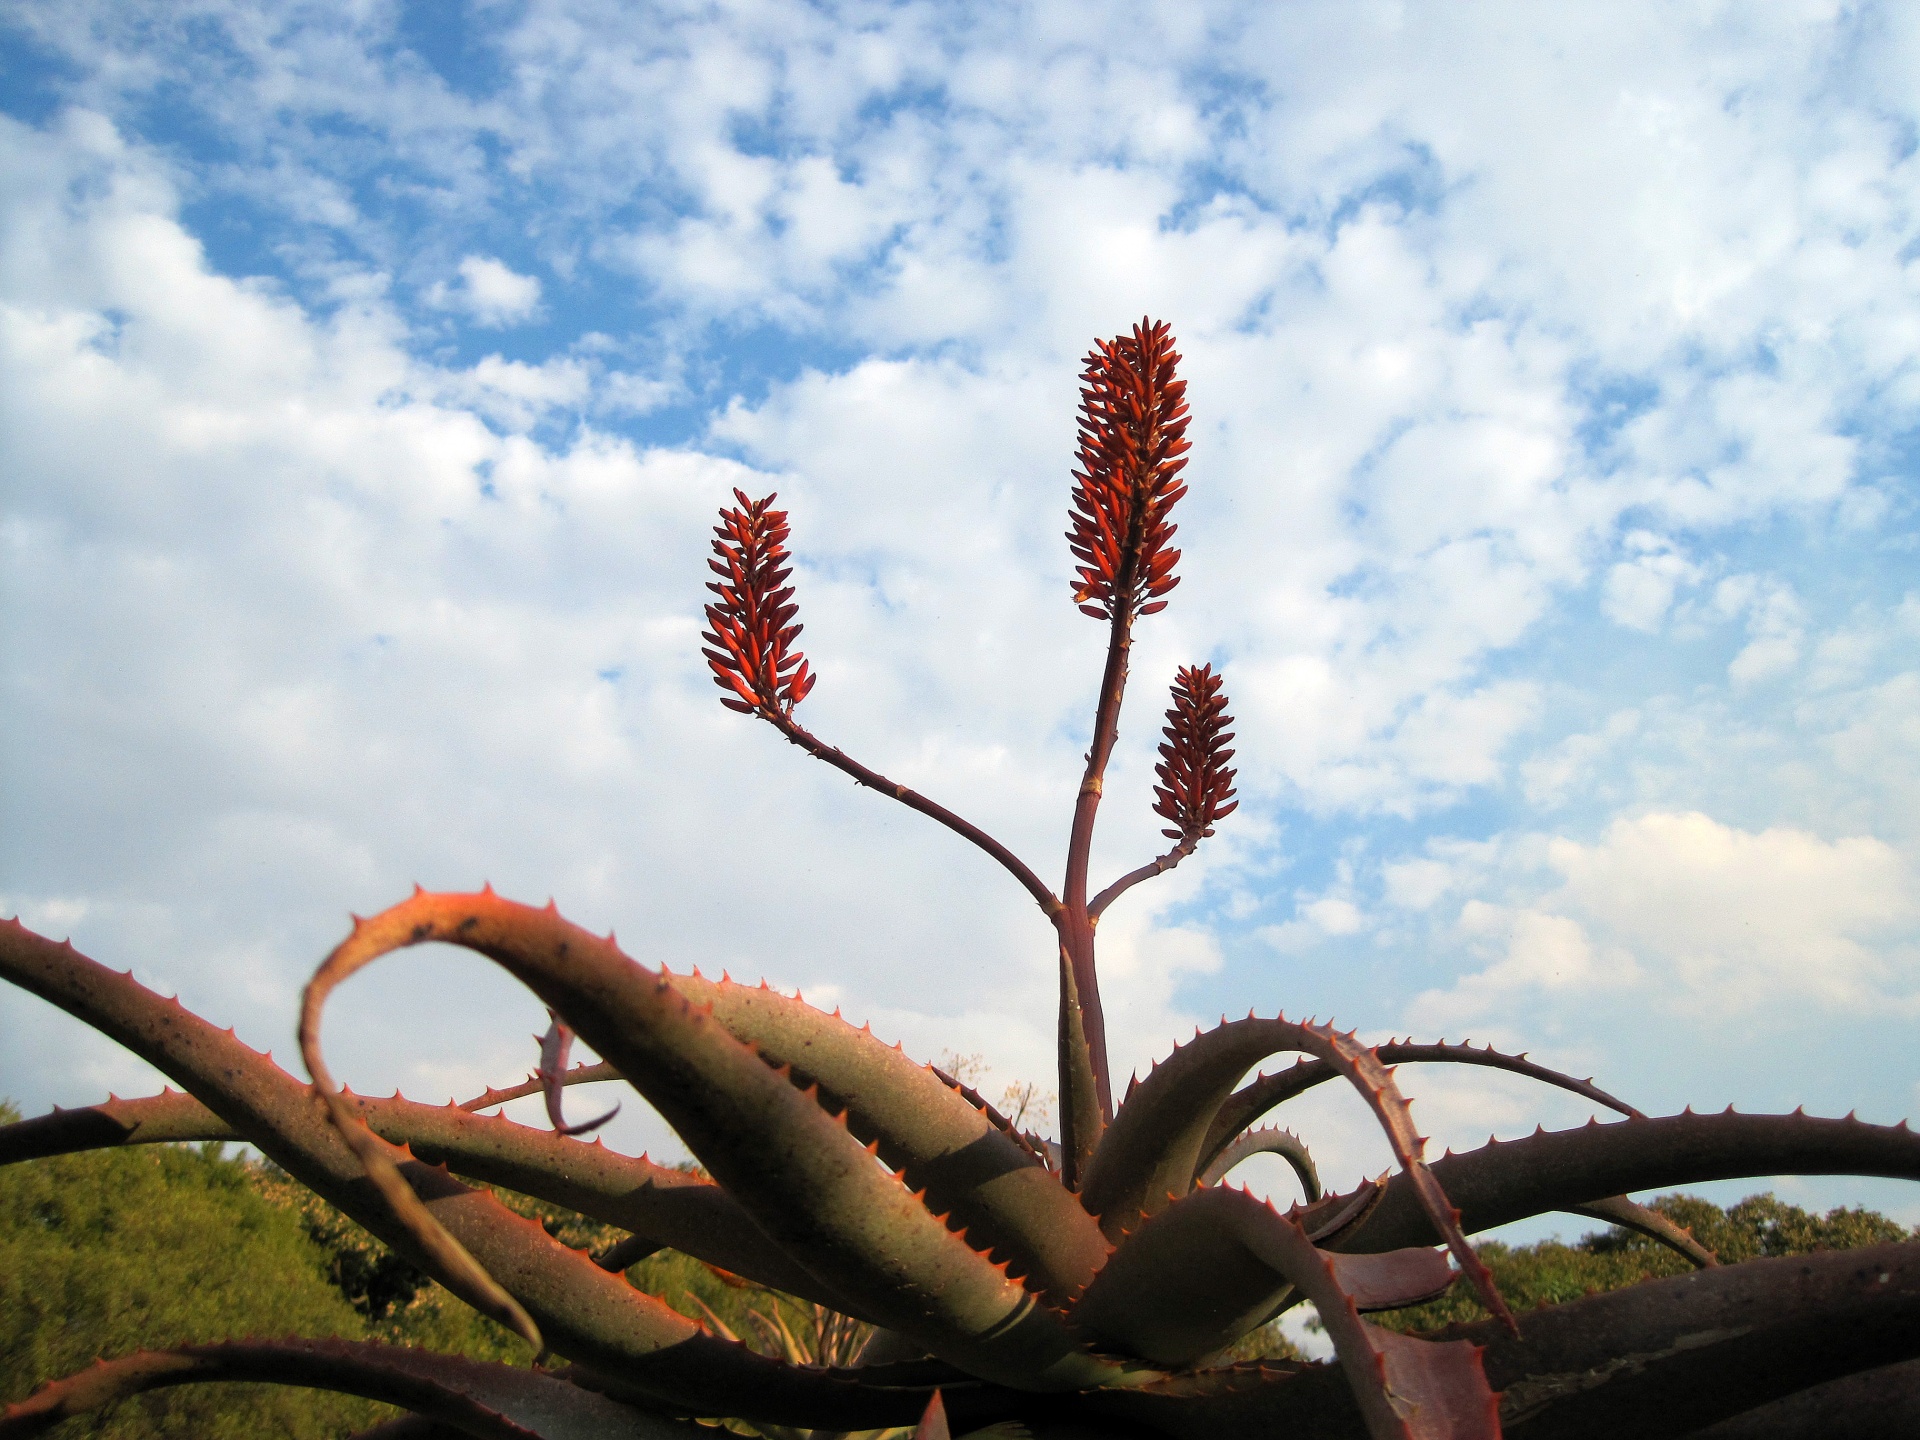 Aloe Flowers Against The Sky